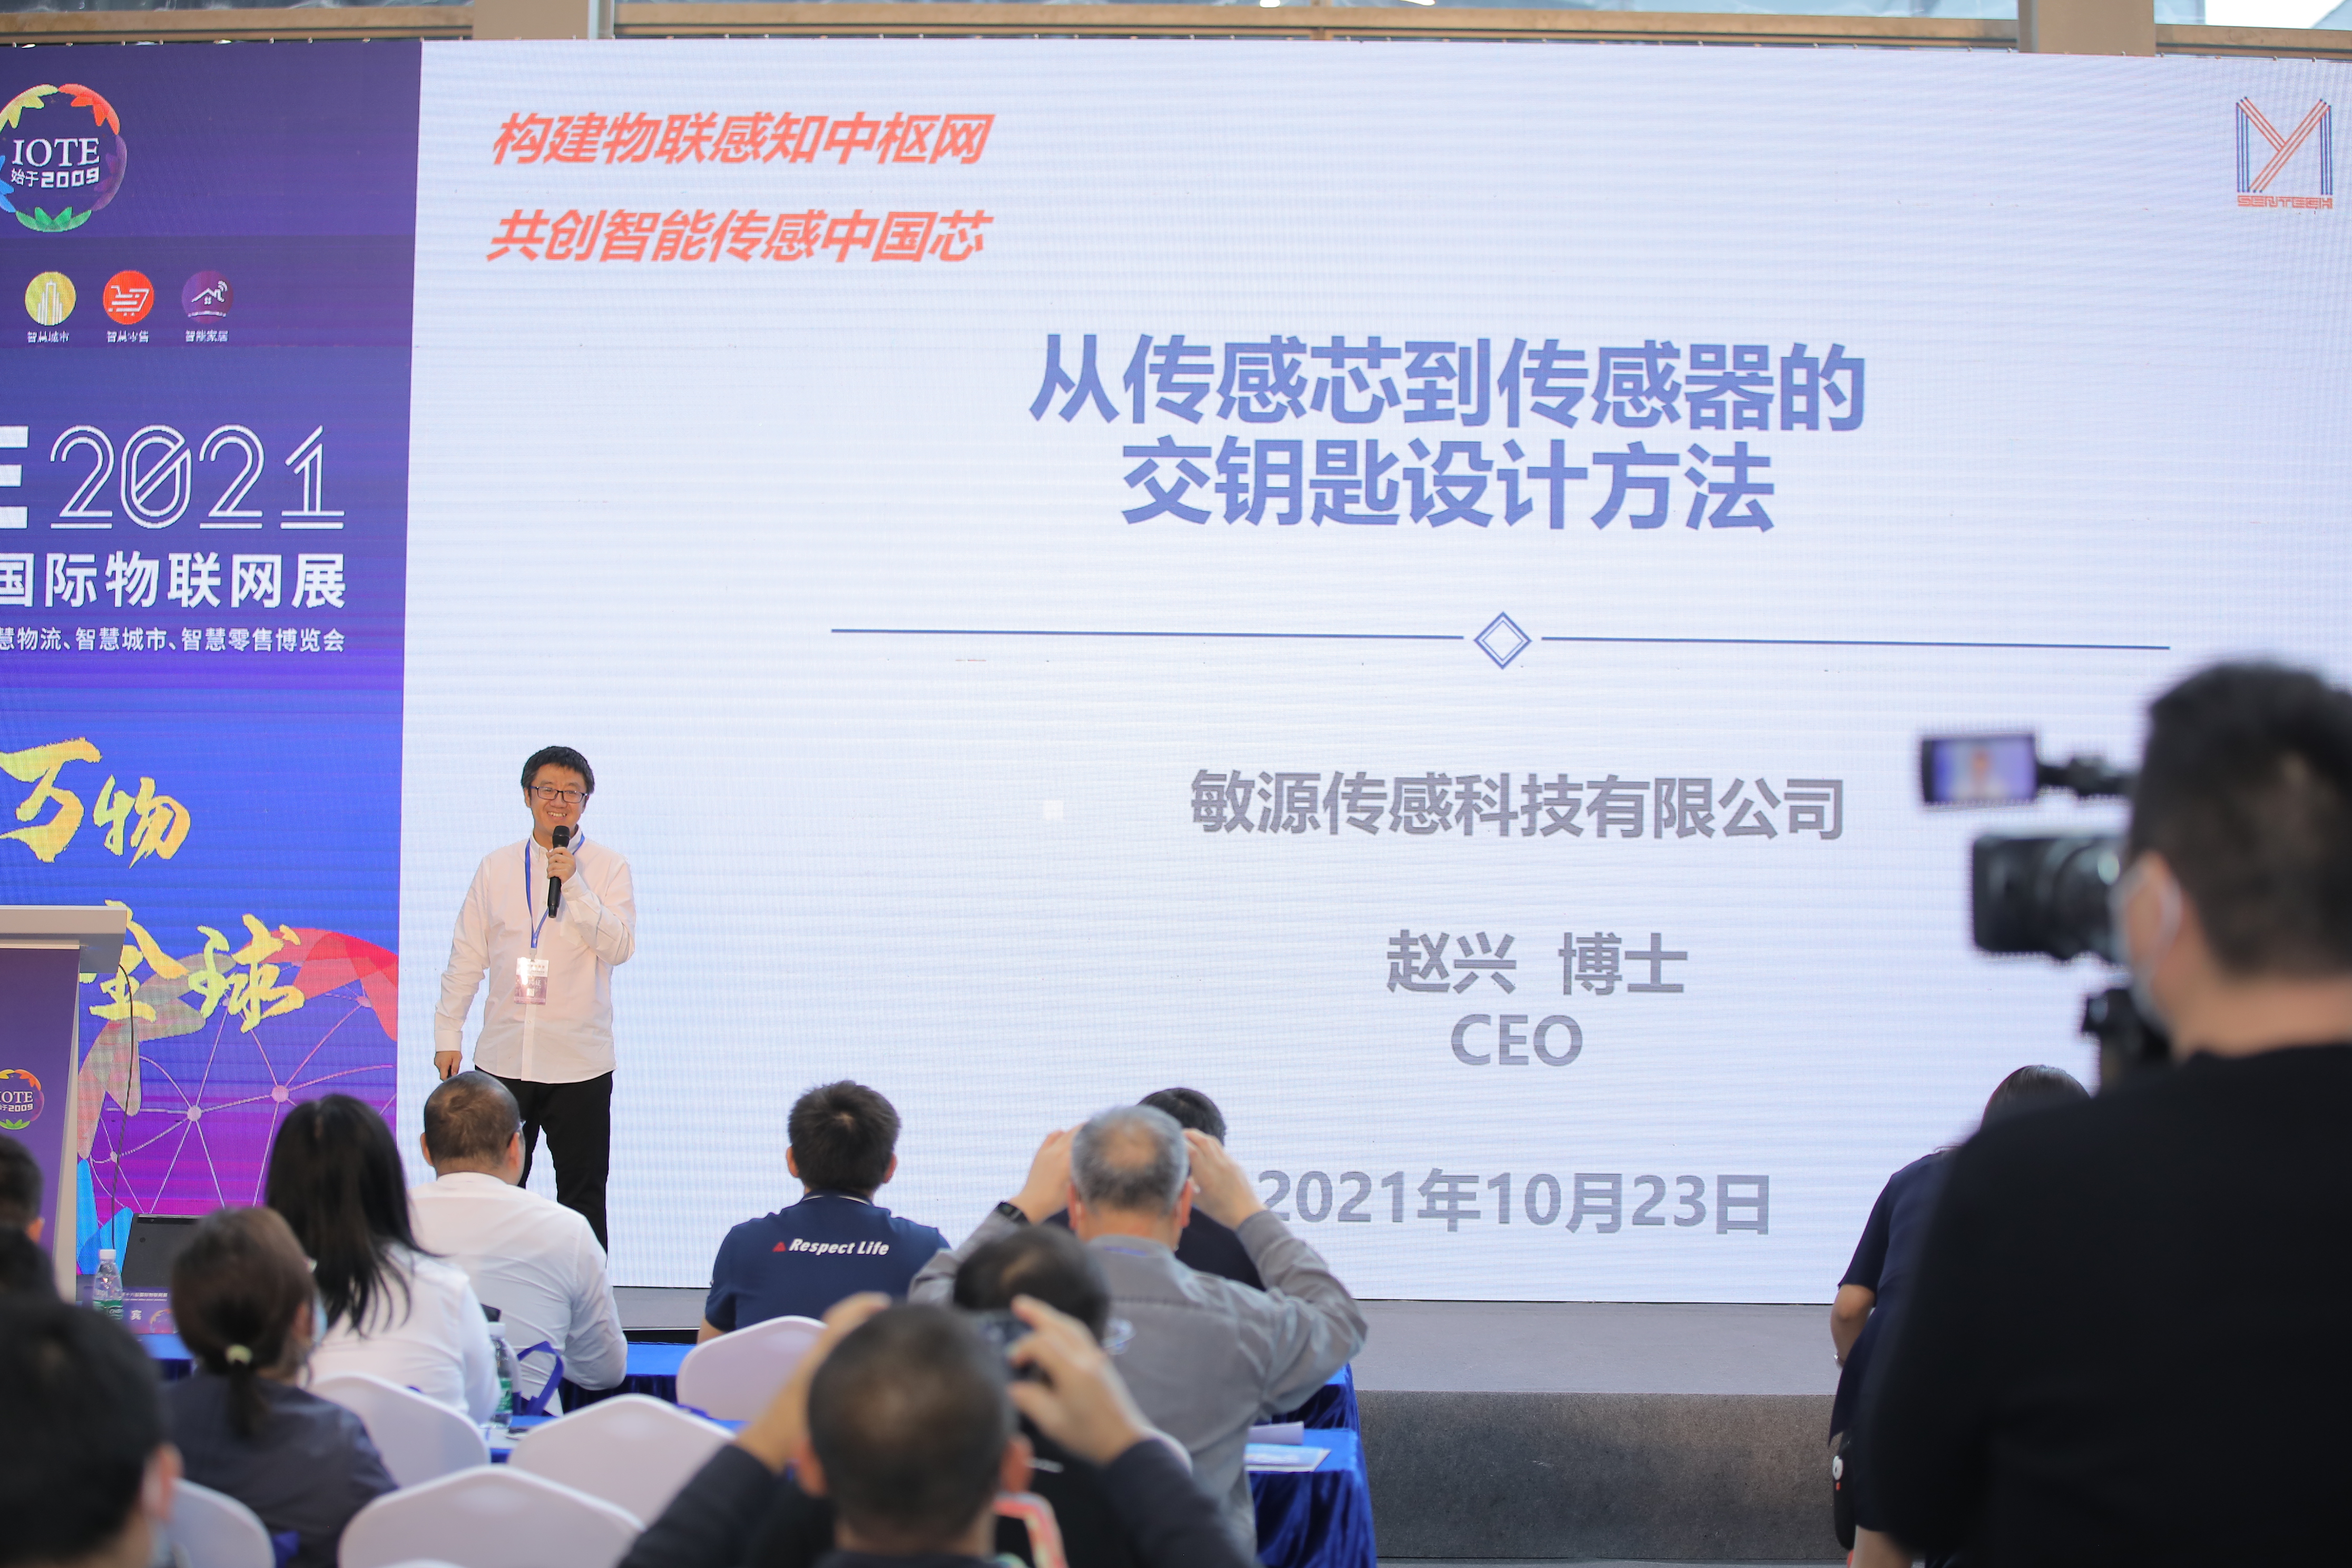 【论坛】IOTE 2021深圳国际物联网传感器高峰论坛 